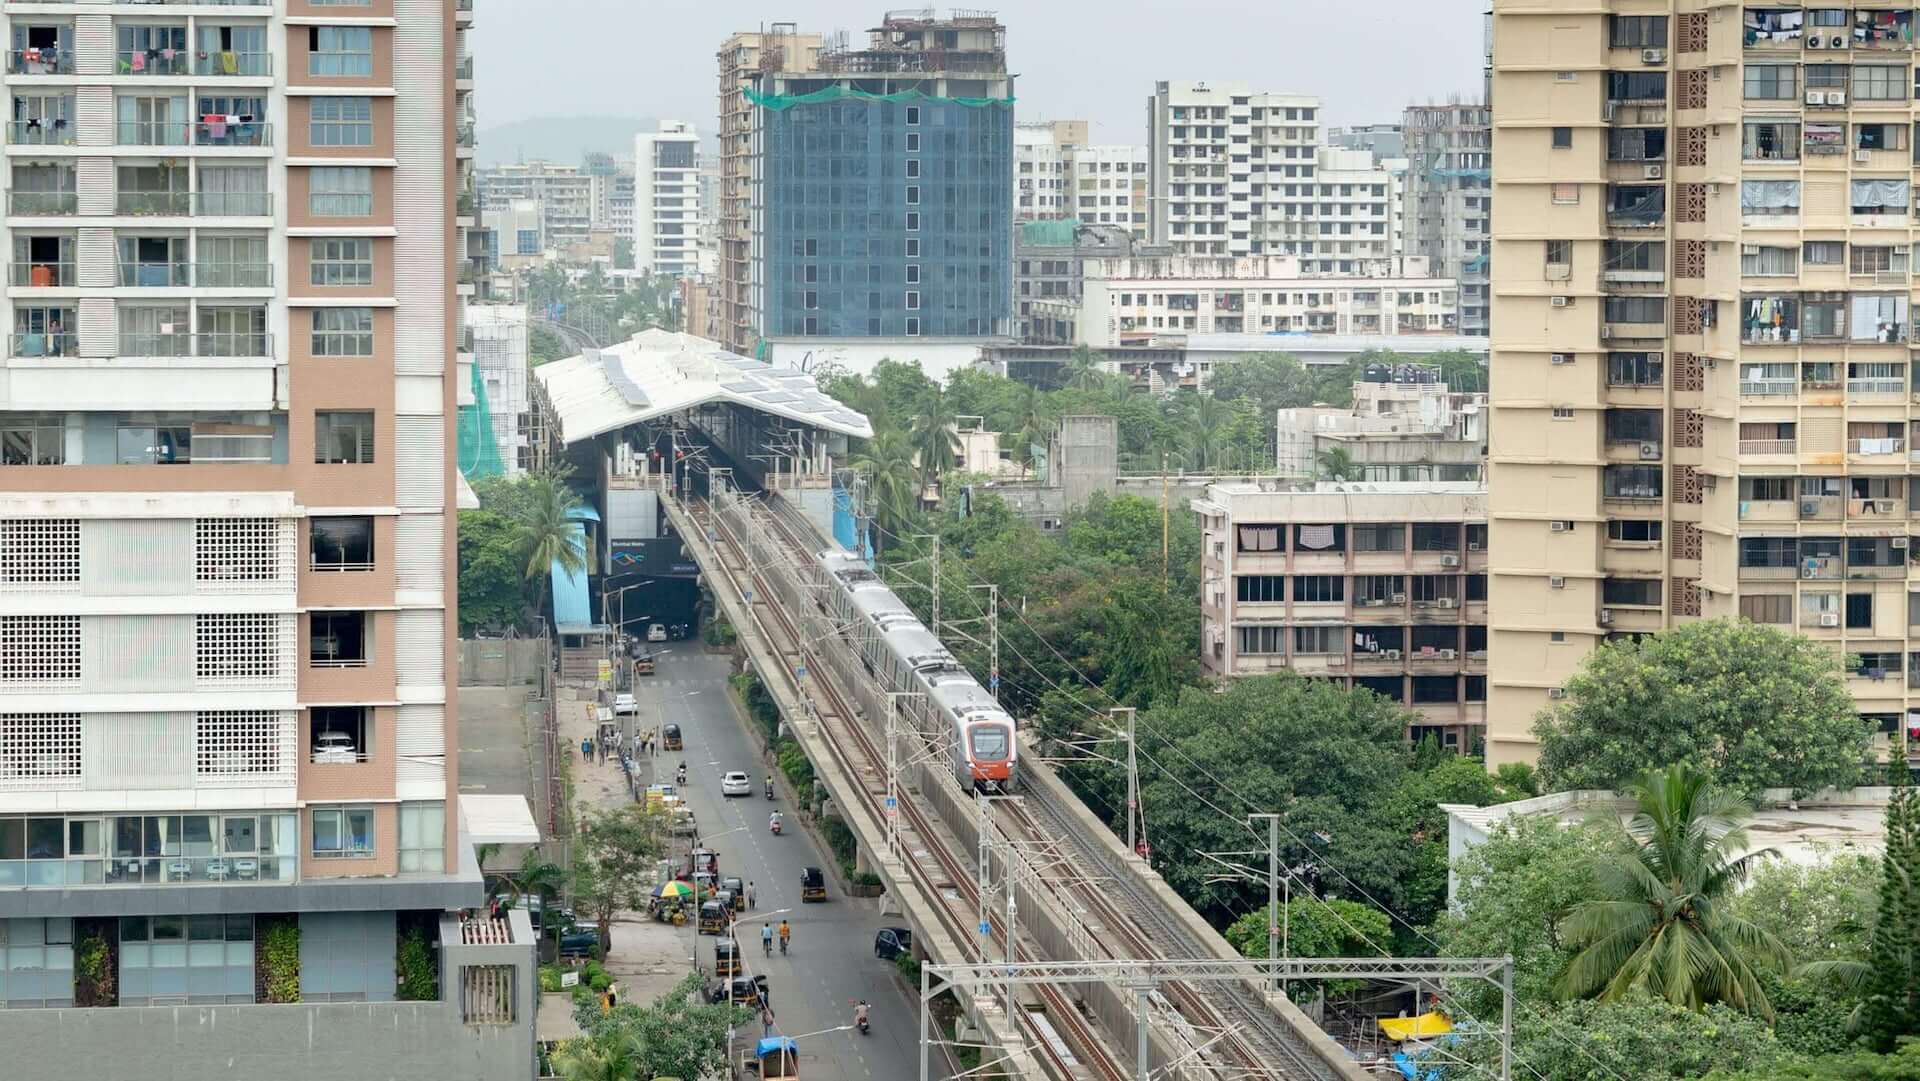 An aerial photo of an elevated train running through Mumbai.